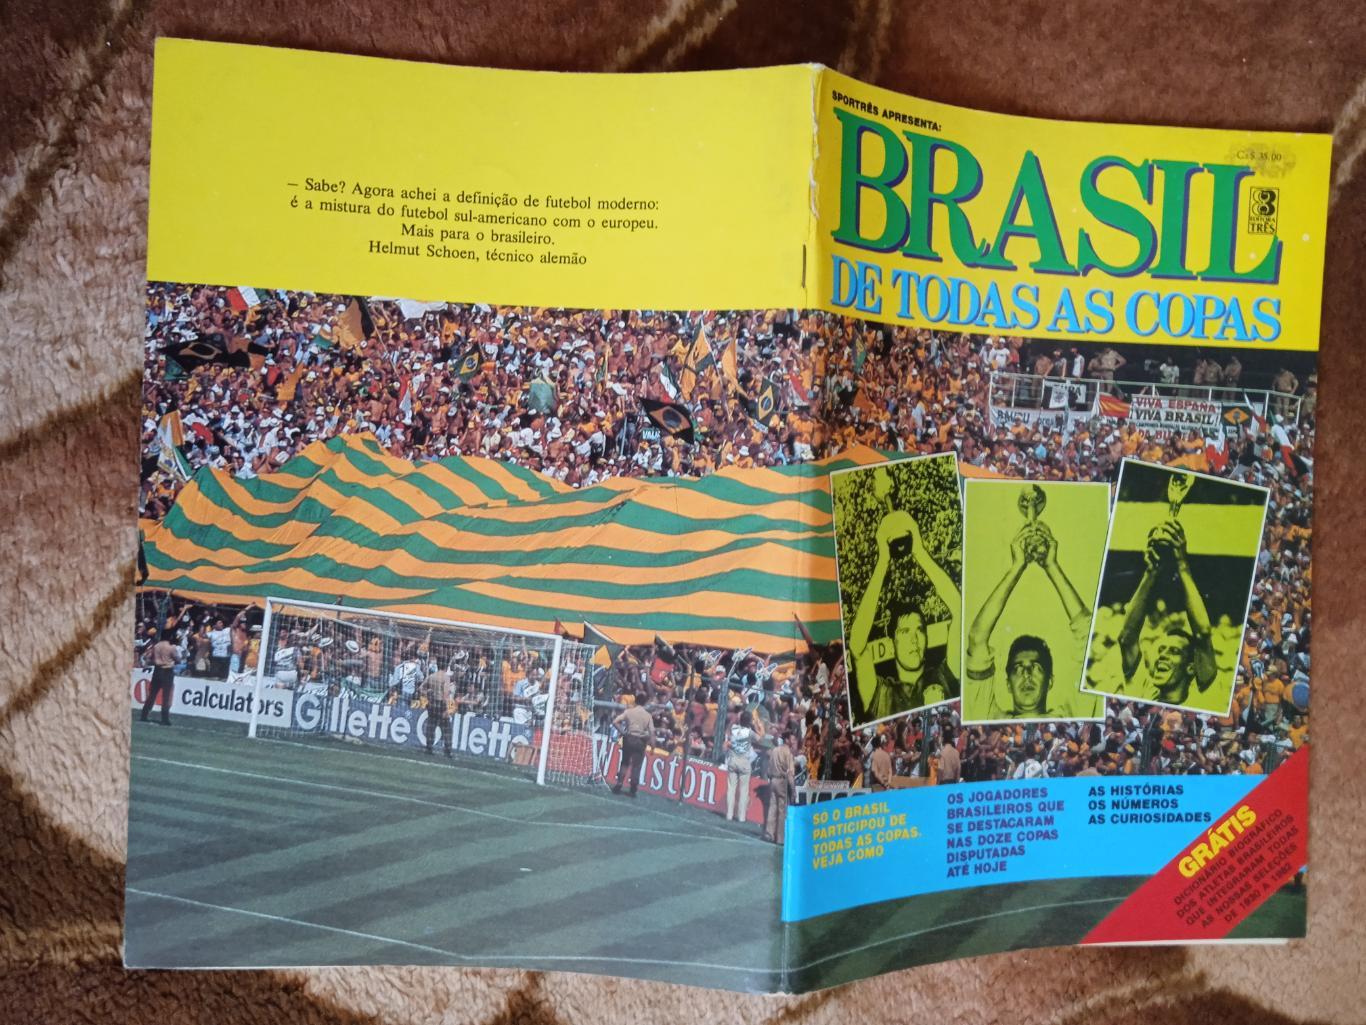 Сборная Бразилии на чемпионатах мира по футболу 1930 - 1982.Изд.Бразилия.